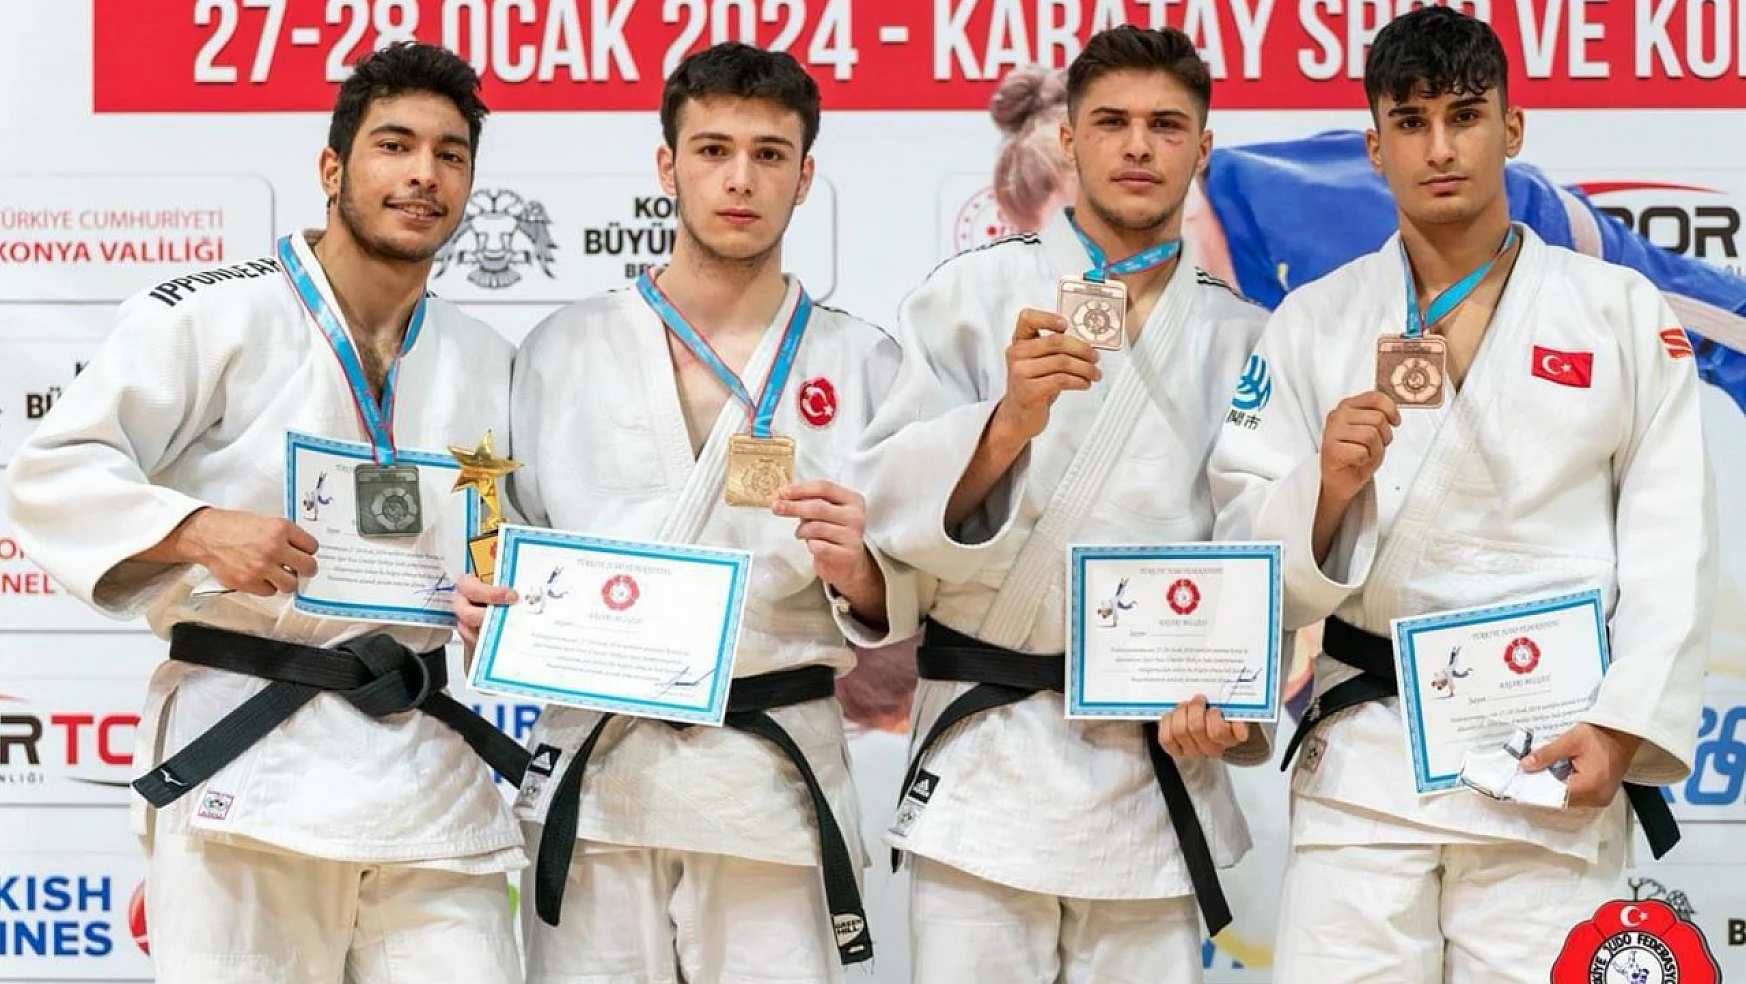 Seydişehir Belediyesi Judo Takımından bir başarı daha!